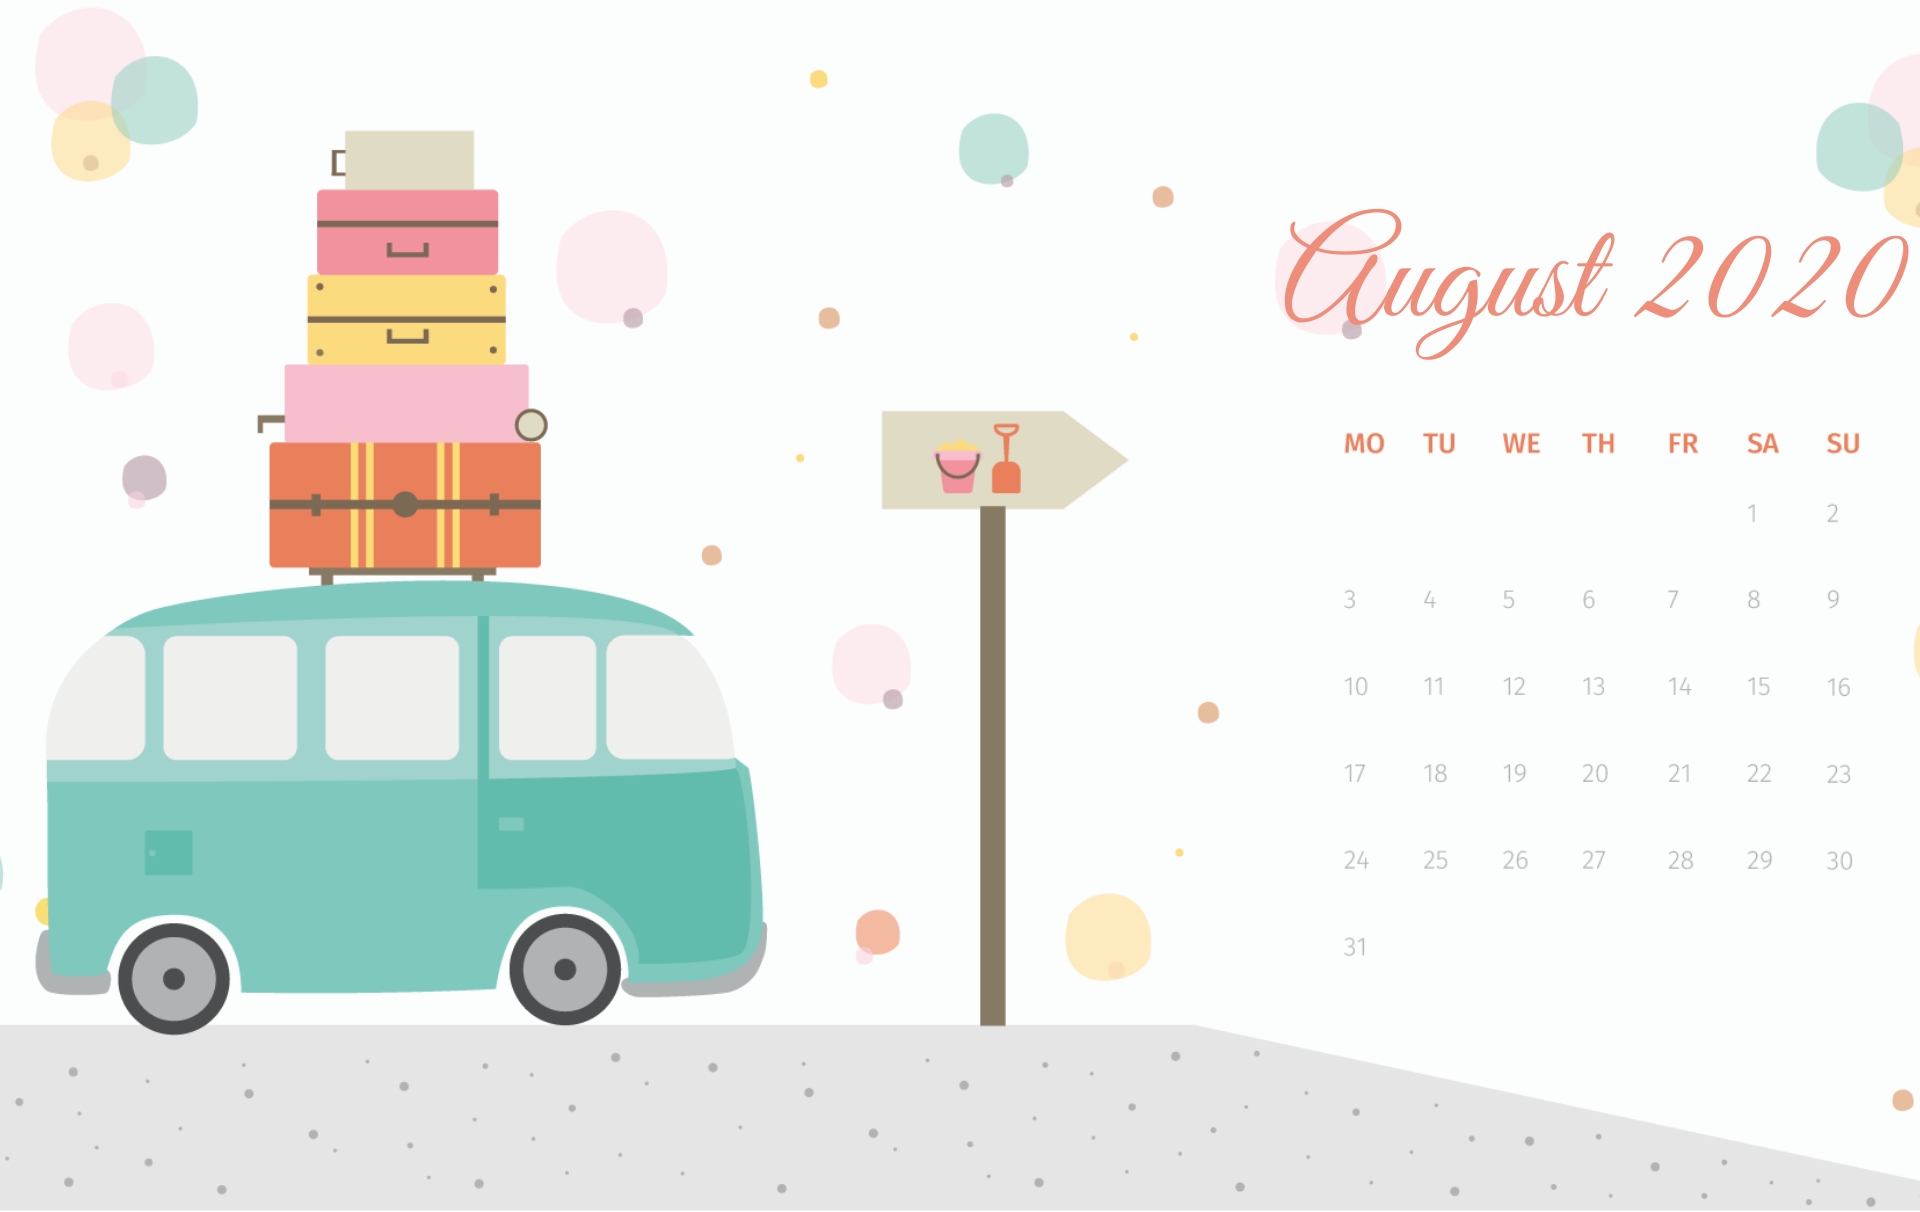 August 2020 Calendar Hd Wallpapers | Calendar 2020 In 2020